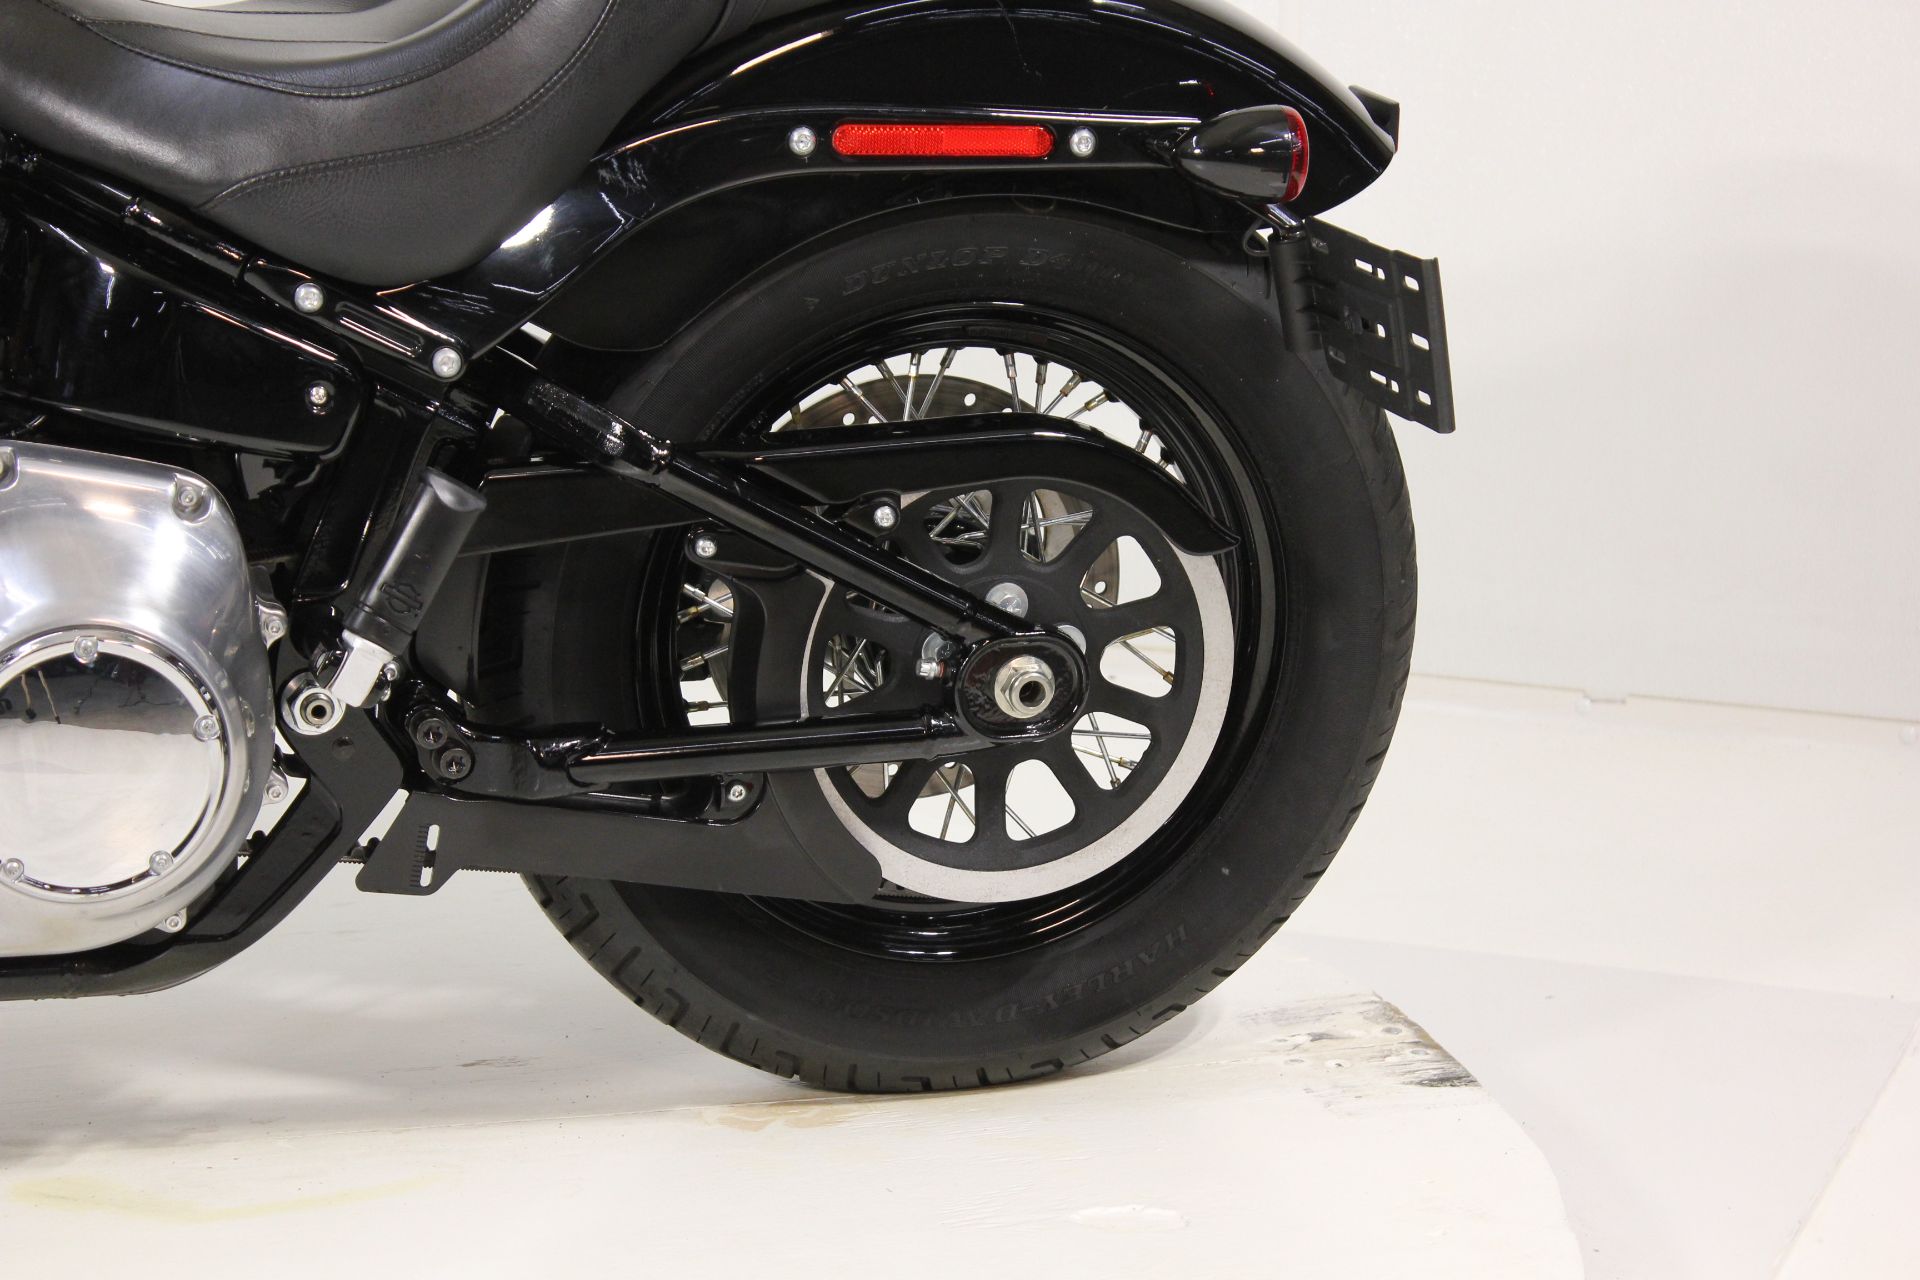 2021 Harley-Davidson Softail Slim® in Pittsfield, Massachusetts - Photo 13